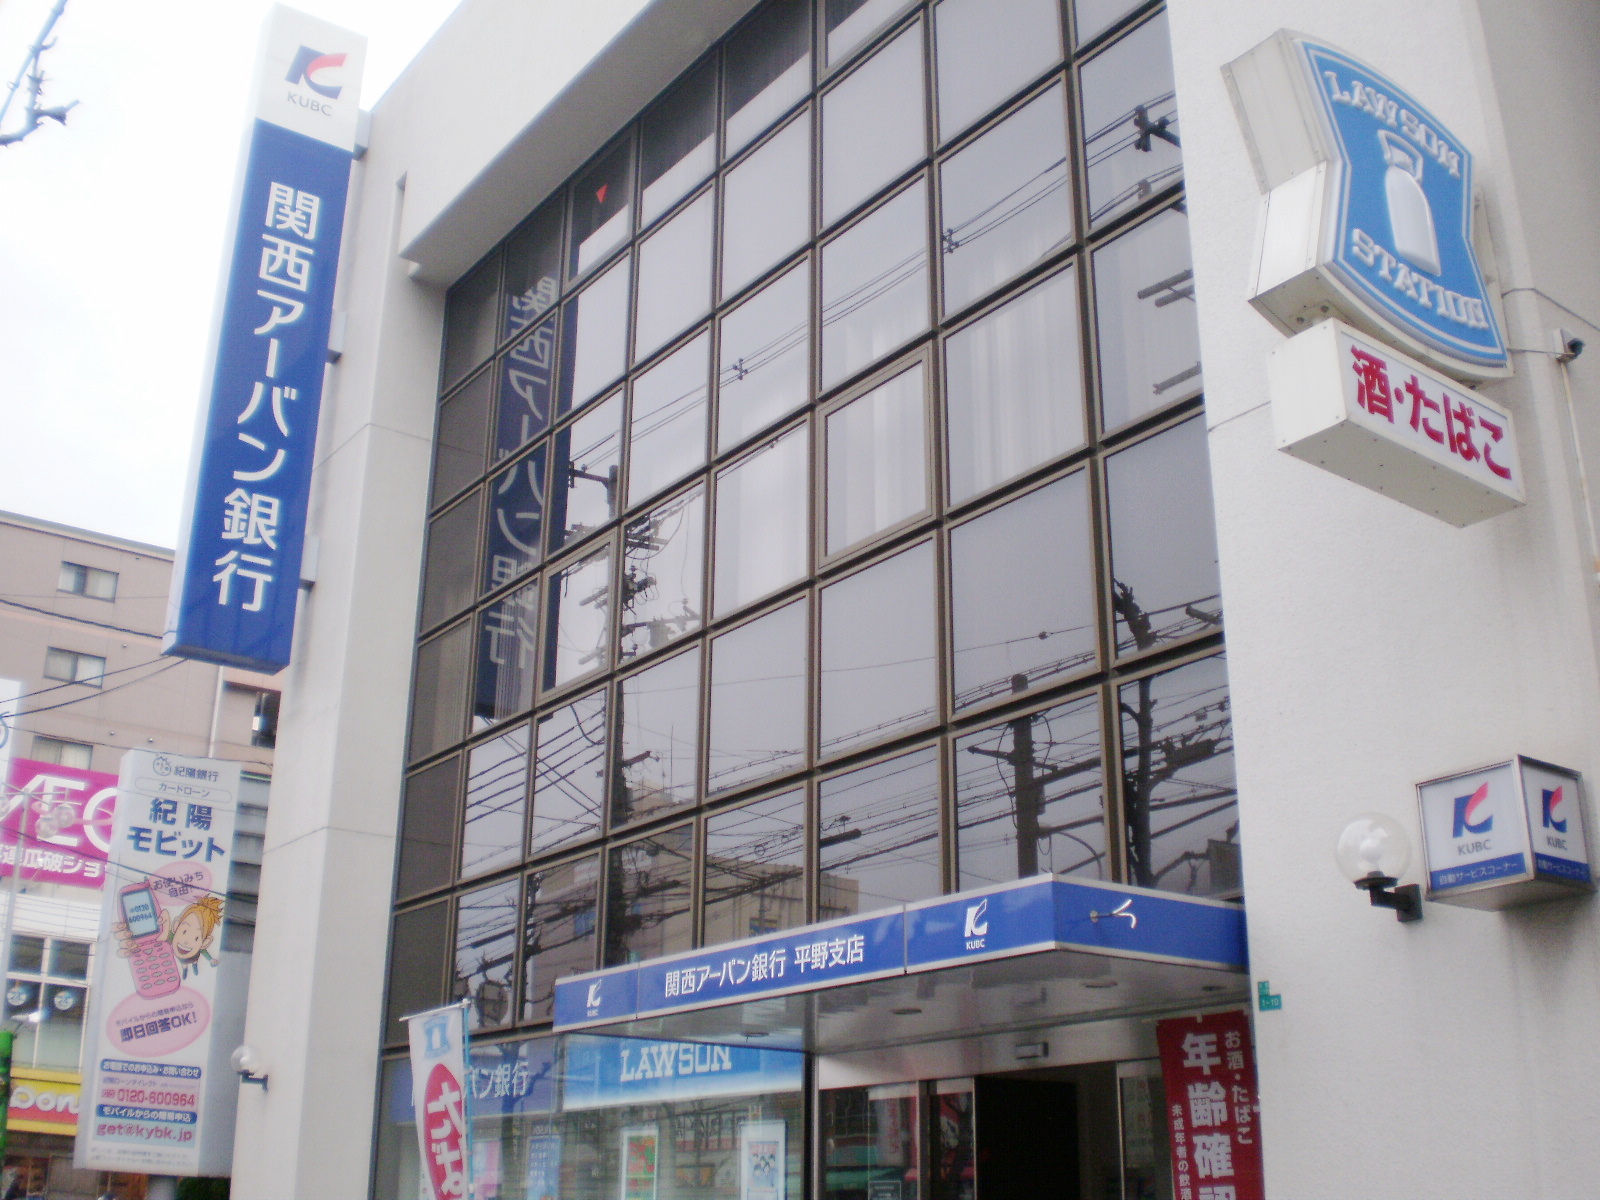 Bank. 363m to Kansai Urban Bank Plain Branch (Bank)